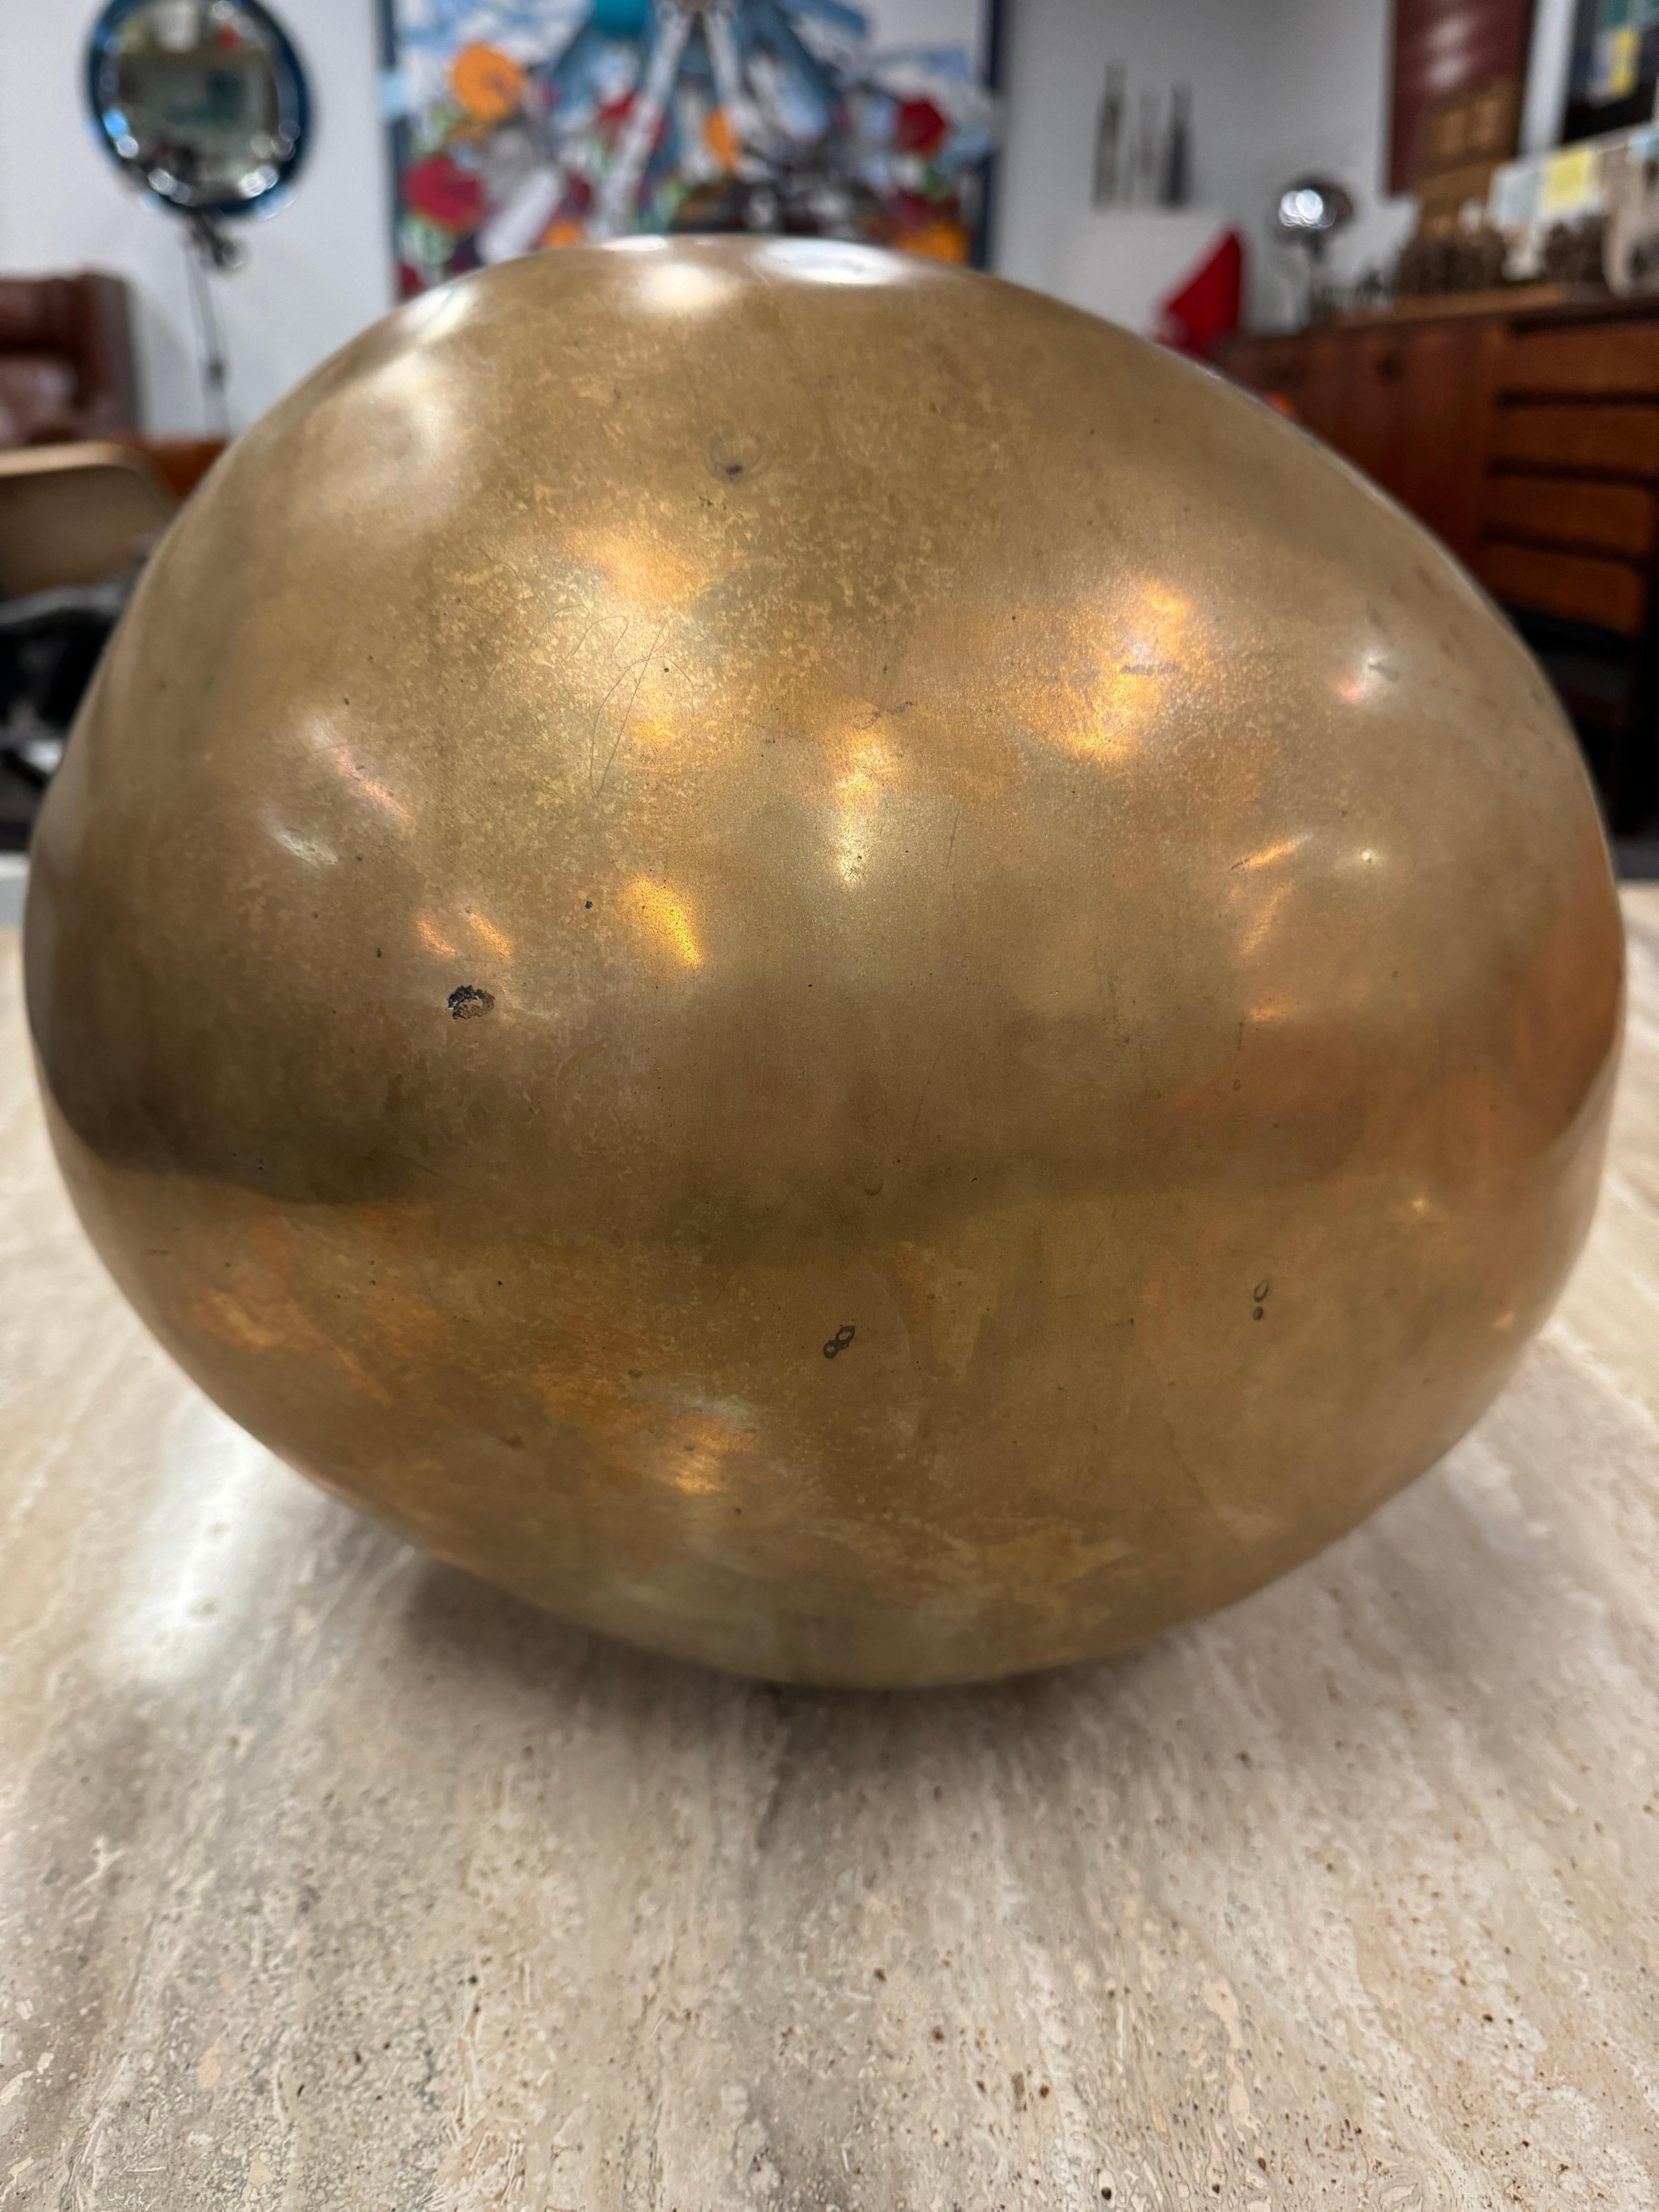 
La sphère de bronze d'Ado Chale
Cette captivante sphère de bronze, témoignage du génie artistique d'Ado Chale, respire l'élégance intemporelle. Fabriqué avec une attention méticuleuse aux détails, il représente une remarquable fusion entre la forme